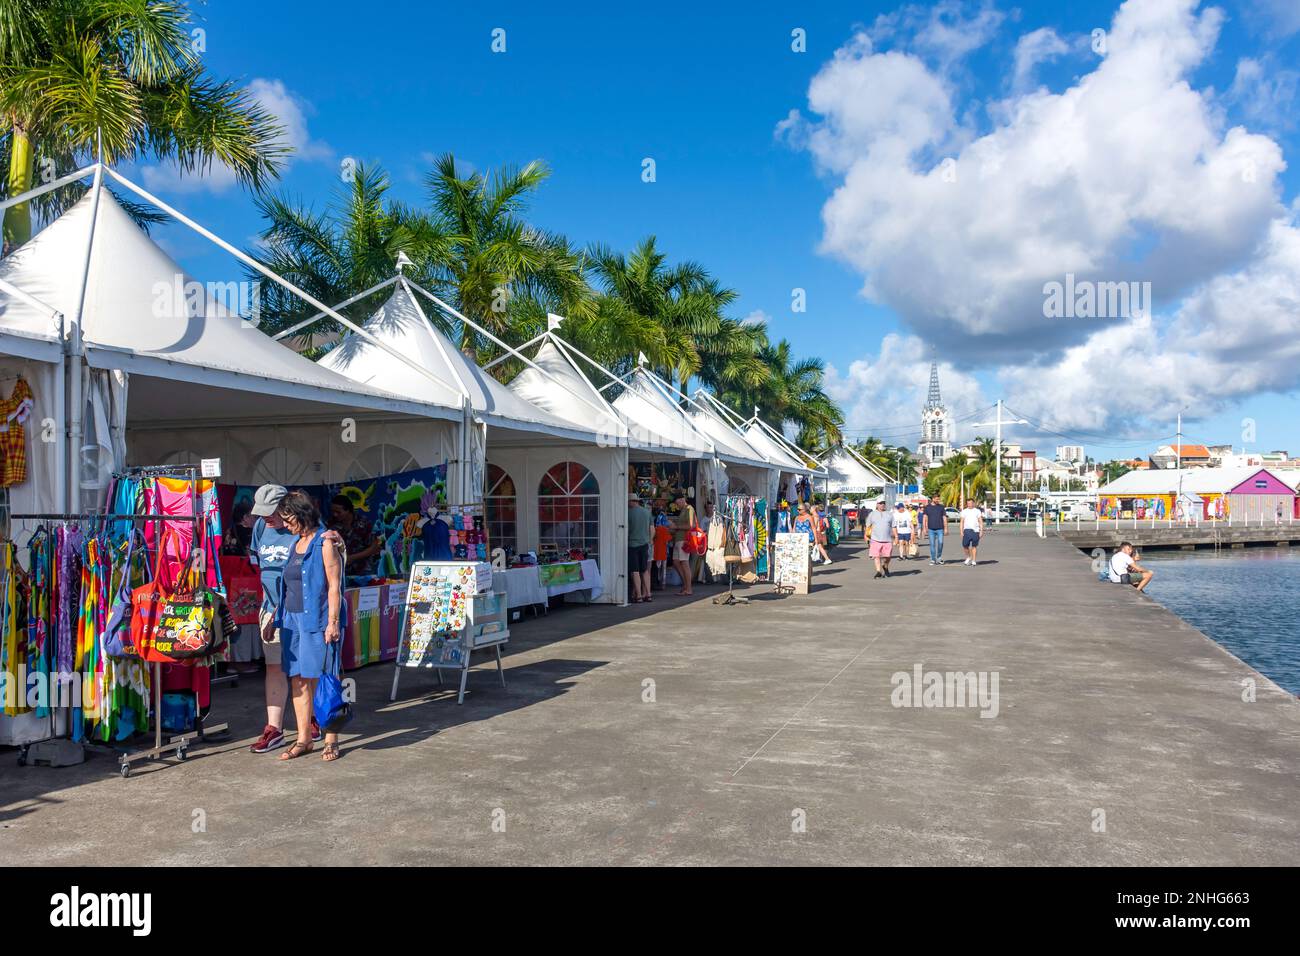 Bancarelle di artigianato in banchina, Fort-de-France, Martinica, piccole Antille, Caraibi Foto Stock